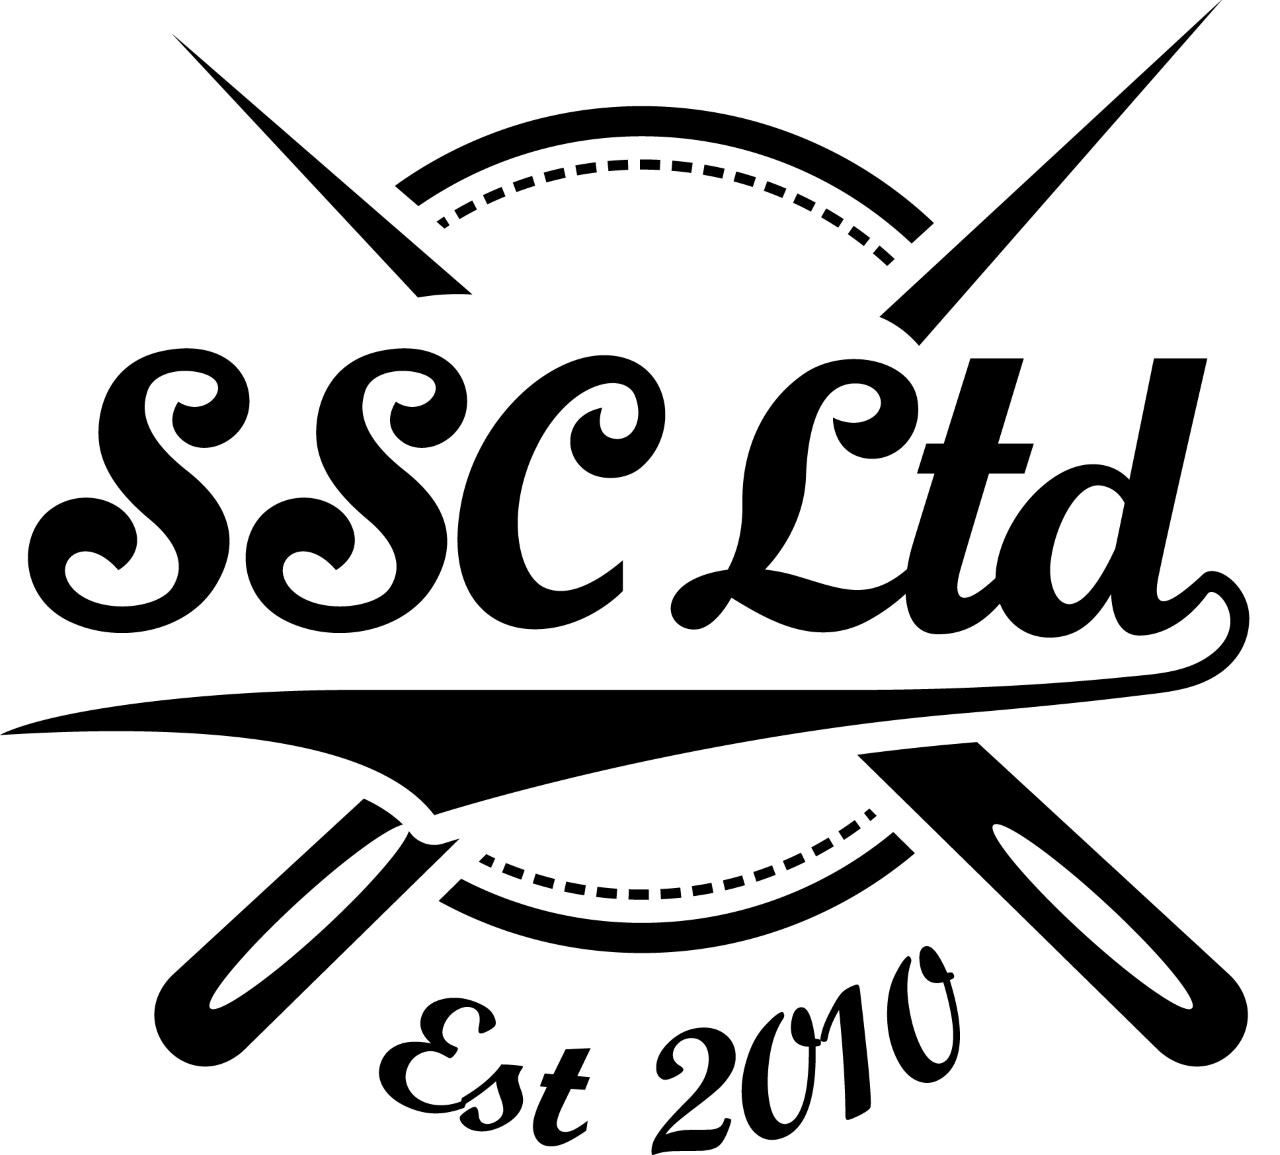 SSC Ltd